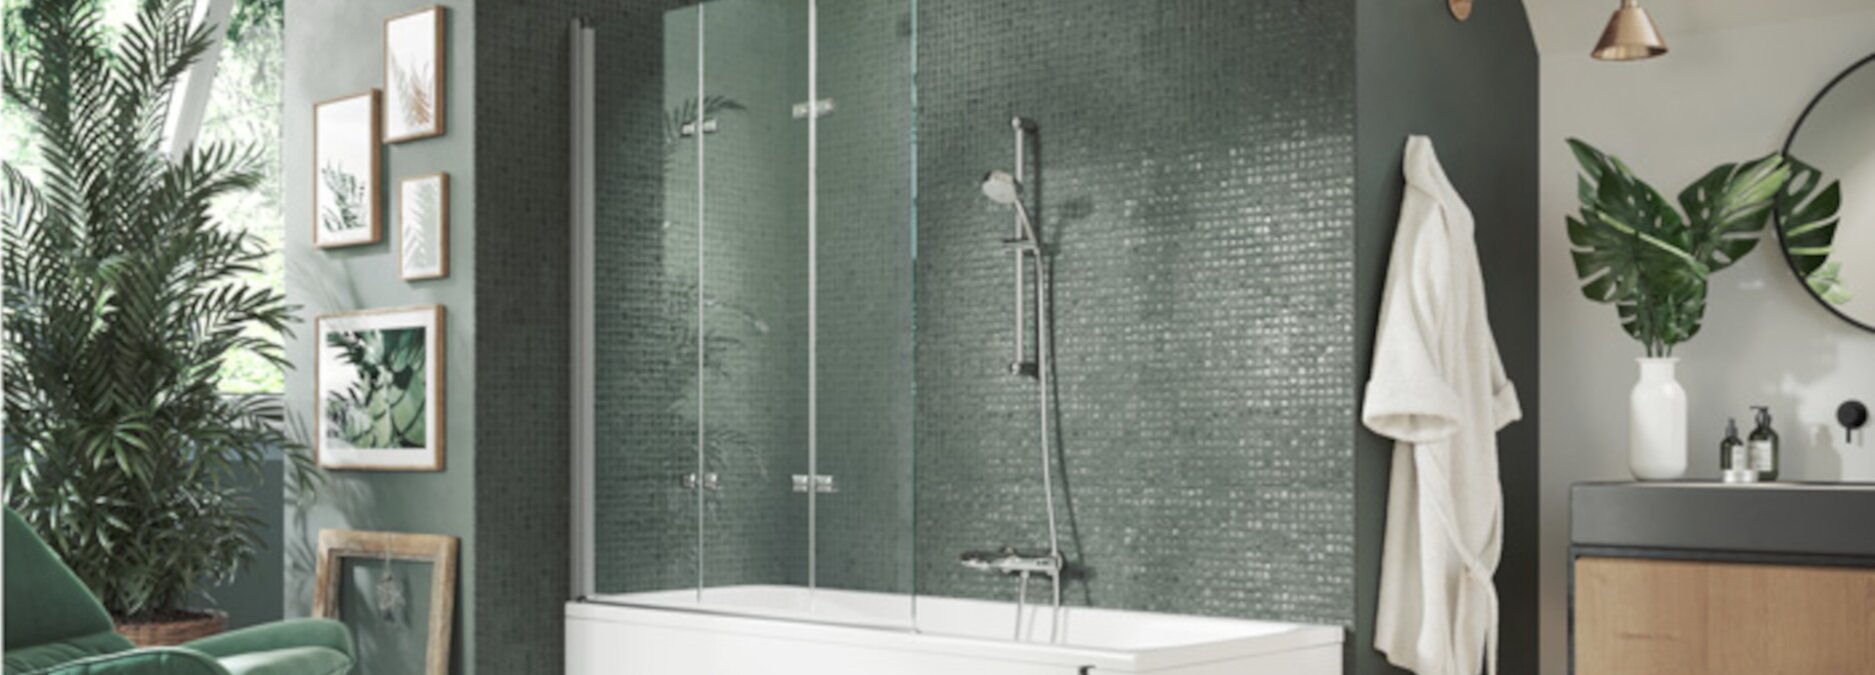 Badewannenaufsatz: So wird Ihre Badewanne zur Dusche - Ratgeber Badewannenaufsätze | Blog ssd-armaturenshop.de